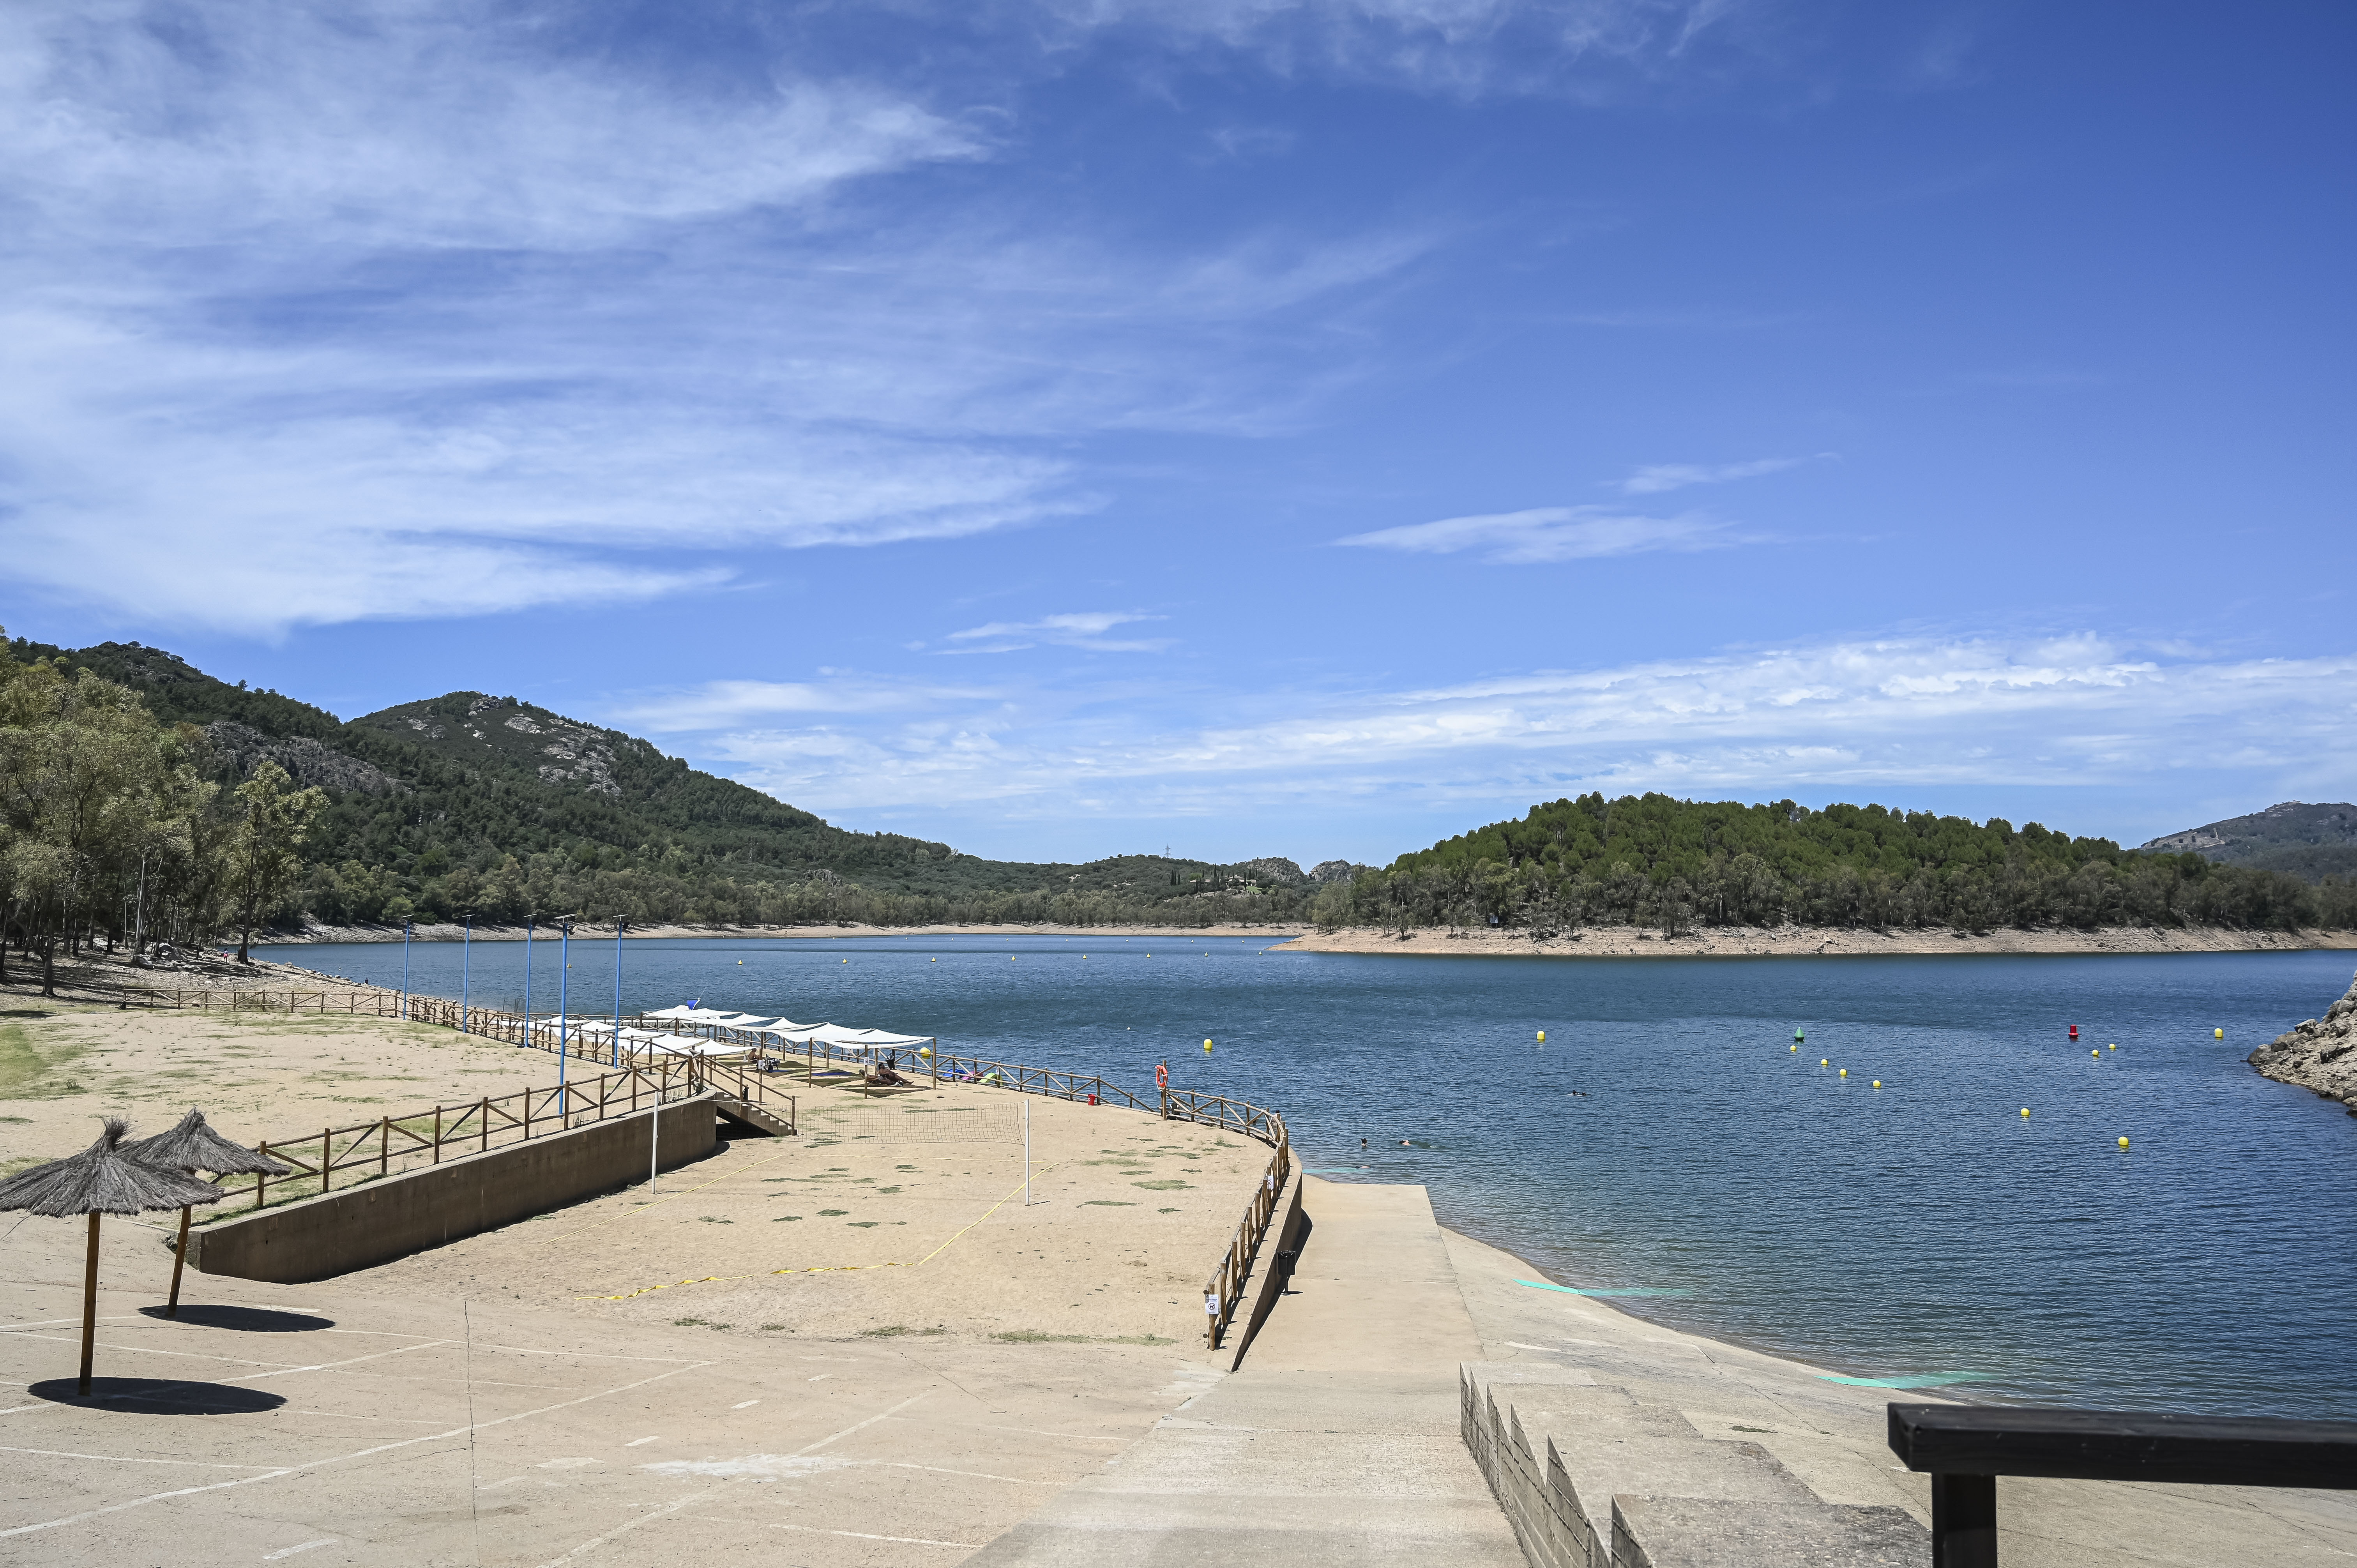 Image 3 of article Extremadura revalida la distinción Bandera Azul para sus 9 playas de interior y el puerto deportivo de Orellana la Vieja